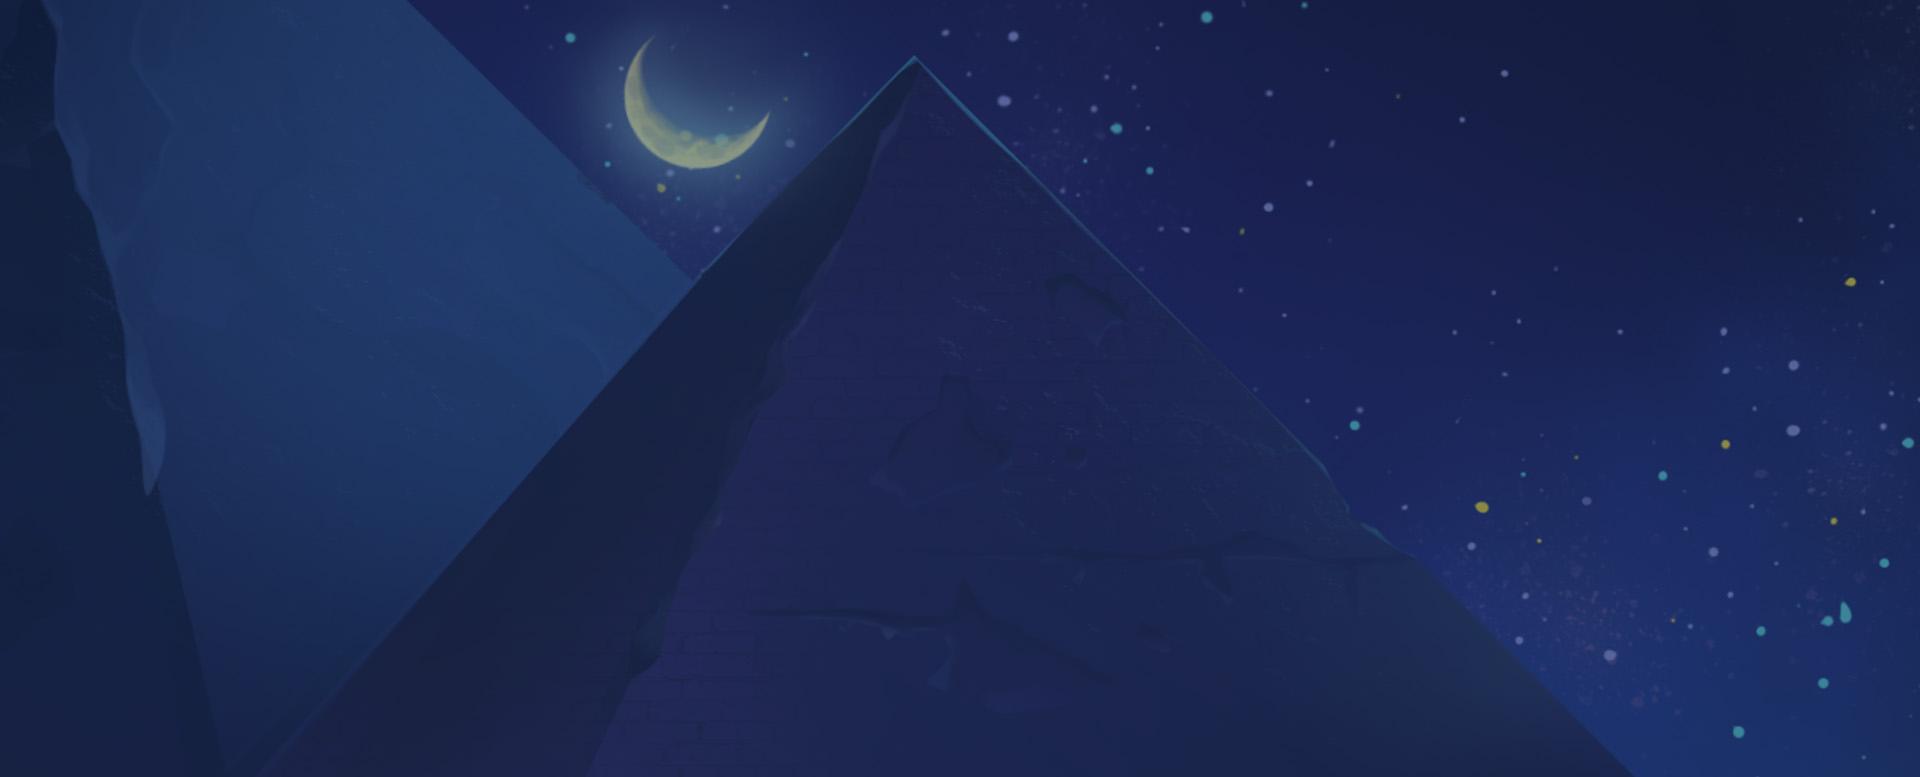 Anubis Moon background